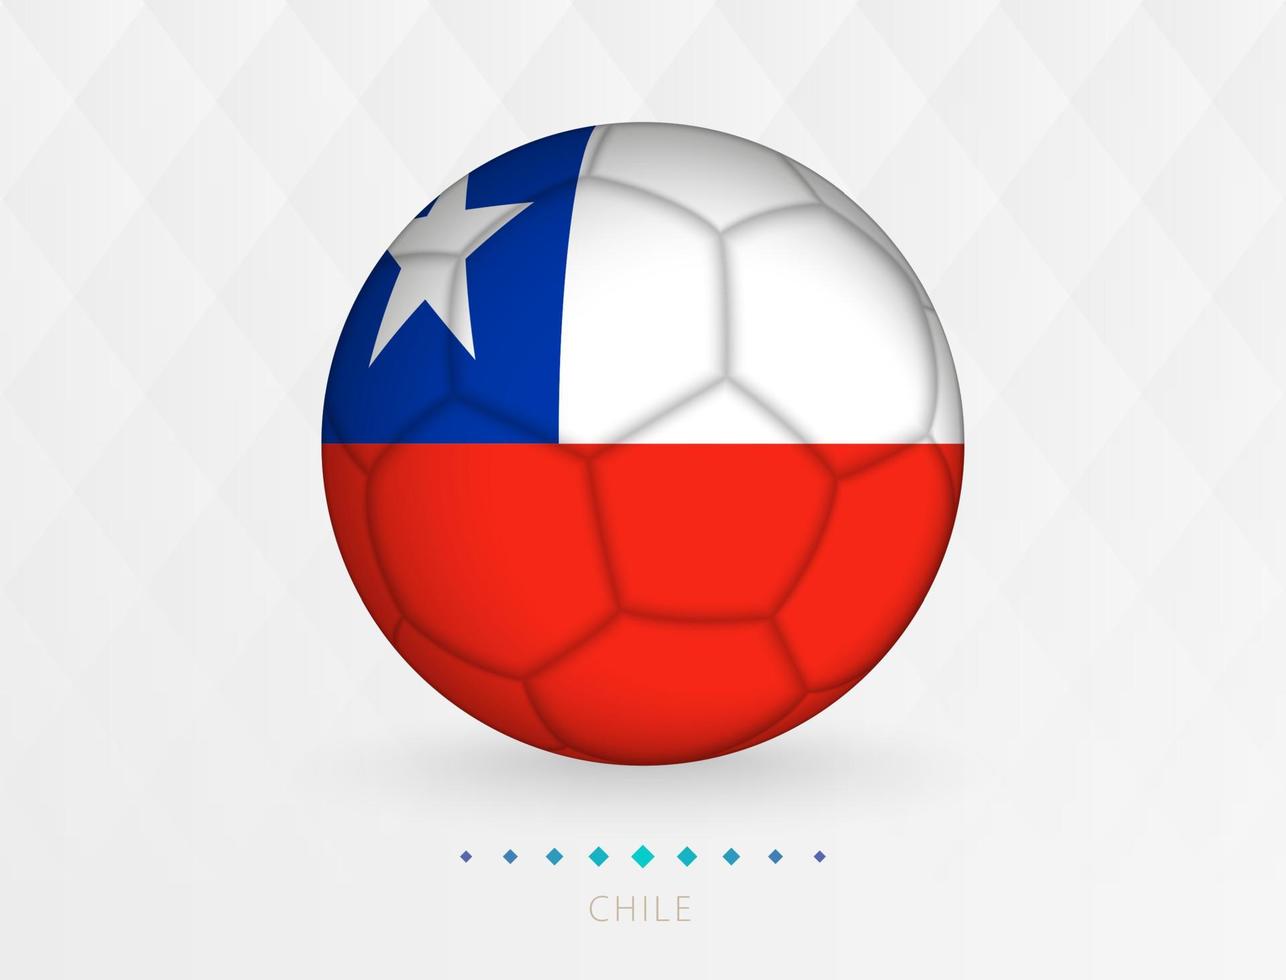 Amerikaans voetbal bal met Chili vlag patroon, voetbal bal met vlag van Chili nationaal team. vector